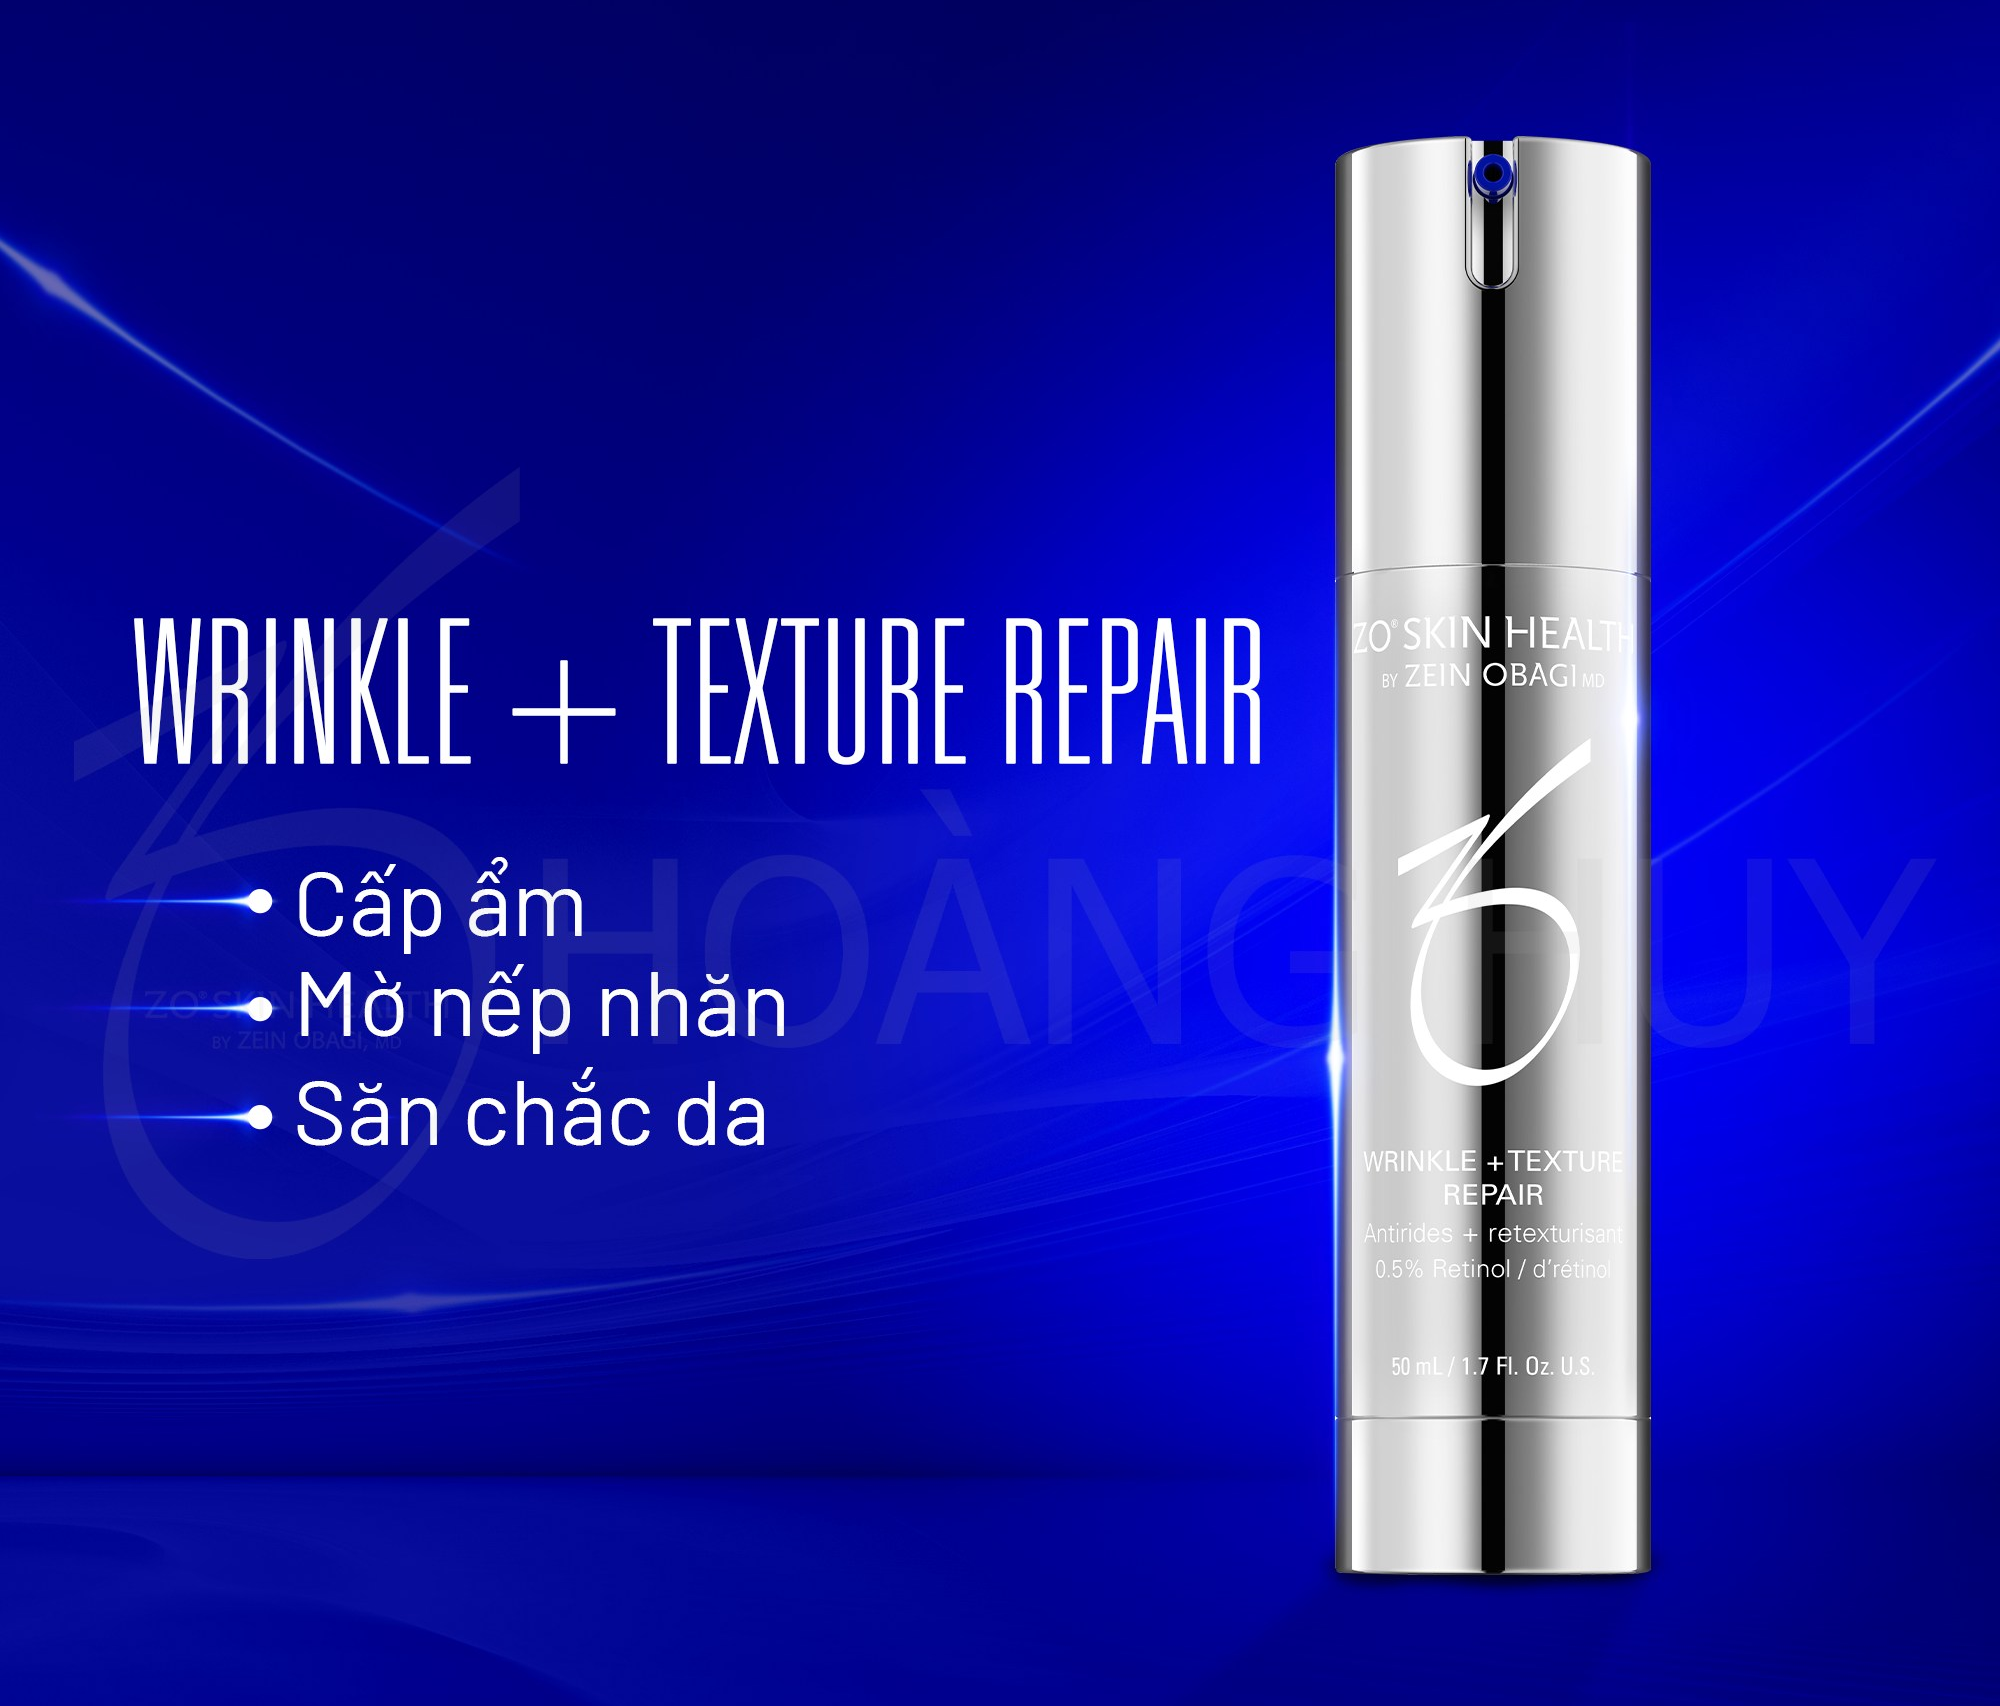  Zo Health Wrinkle + Texture Repair 0.5% Retinol